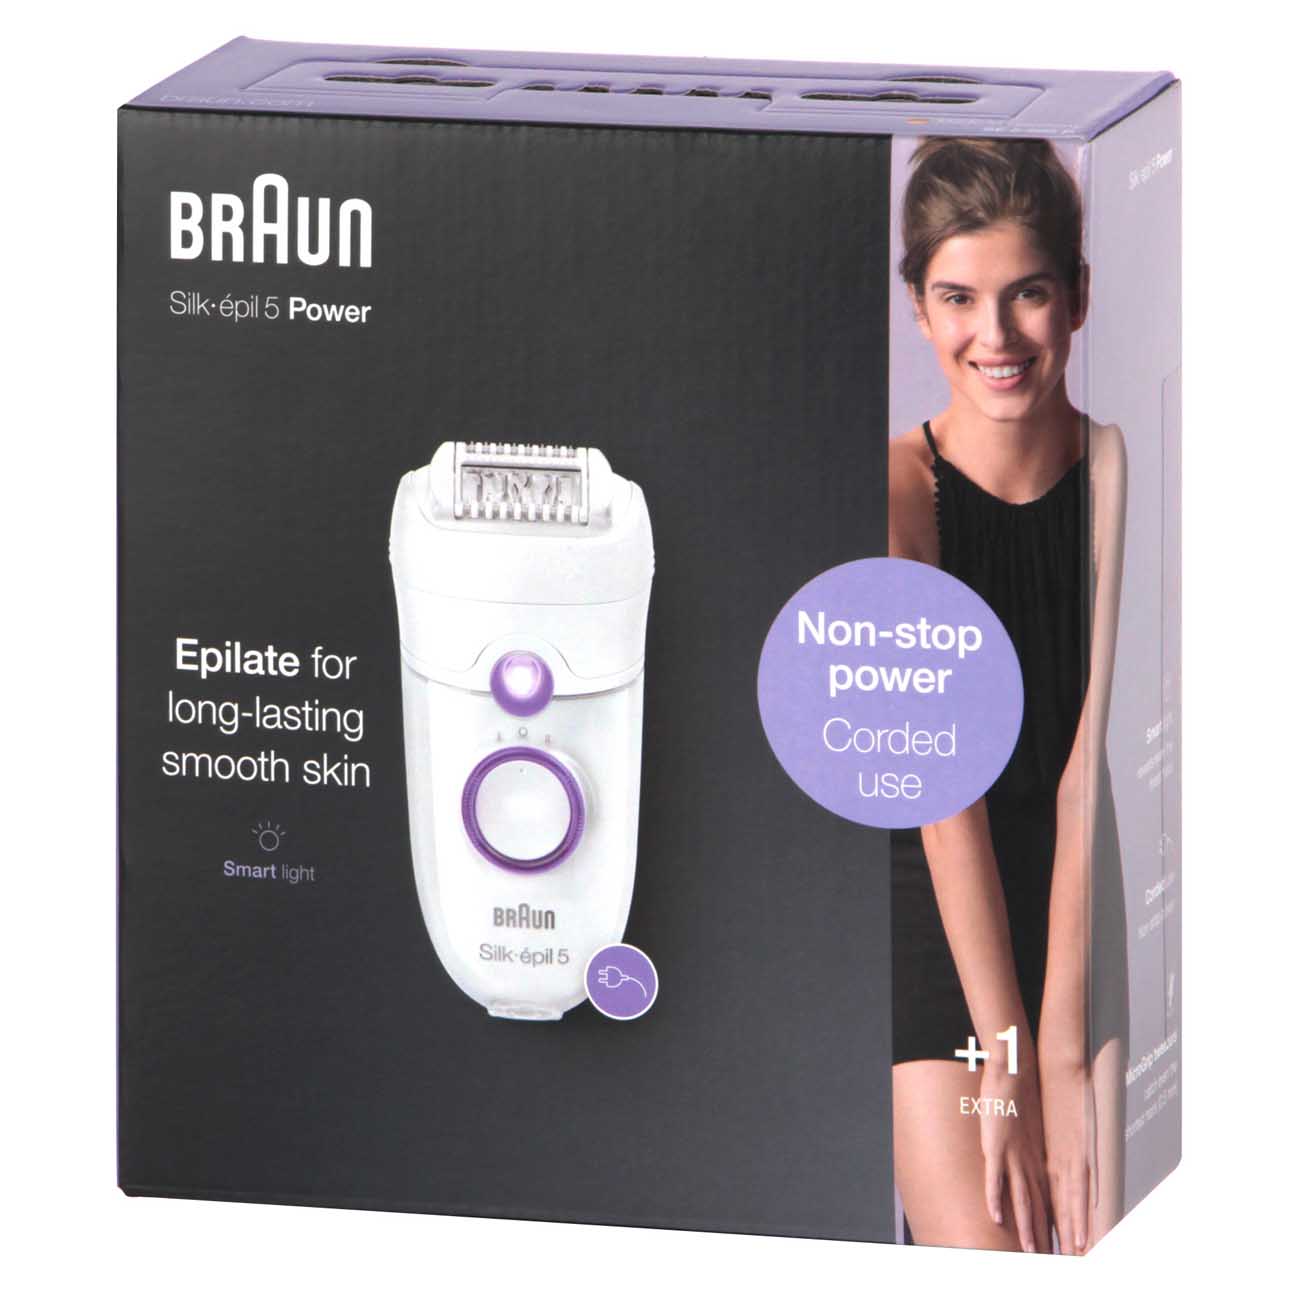 Купить Эпилятор Braun Silk-epil 5 SE 5-505 Power в каталоге интернет  магазина М.Видео по выгодной цене с доставкой, отзывы, фо